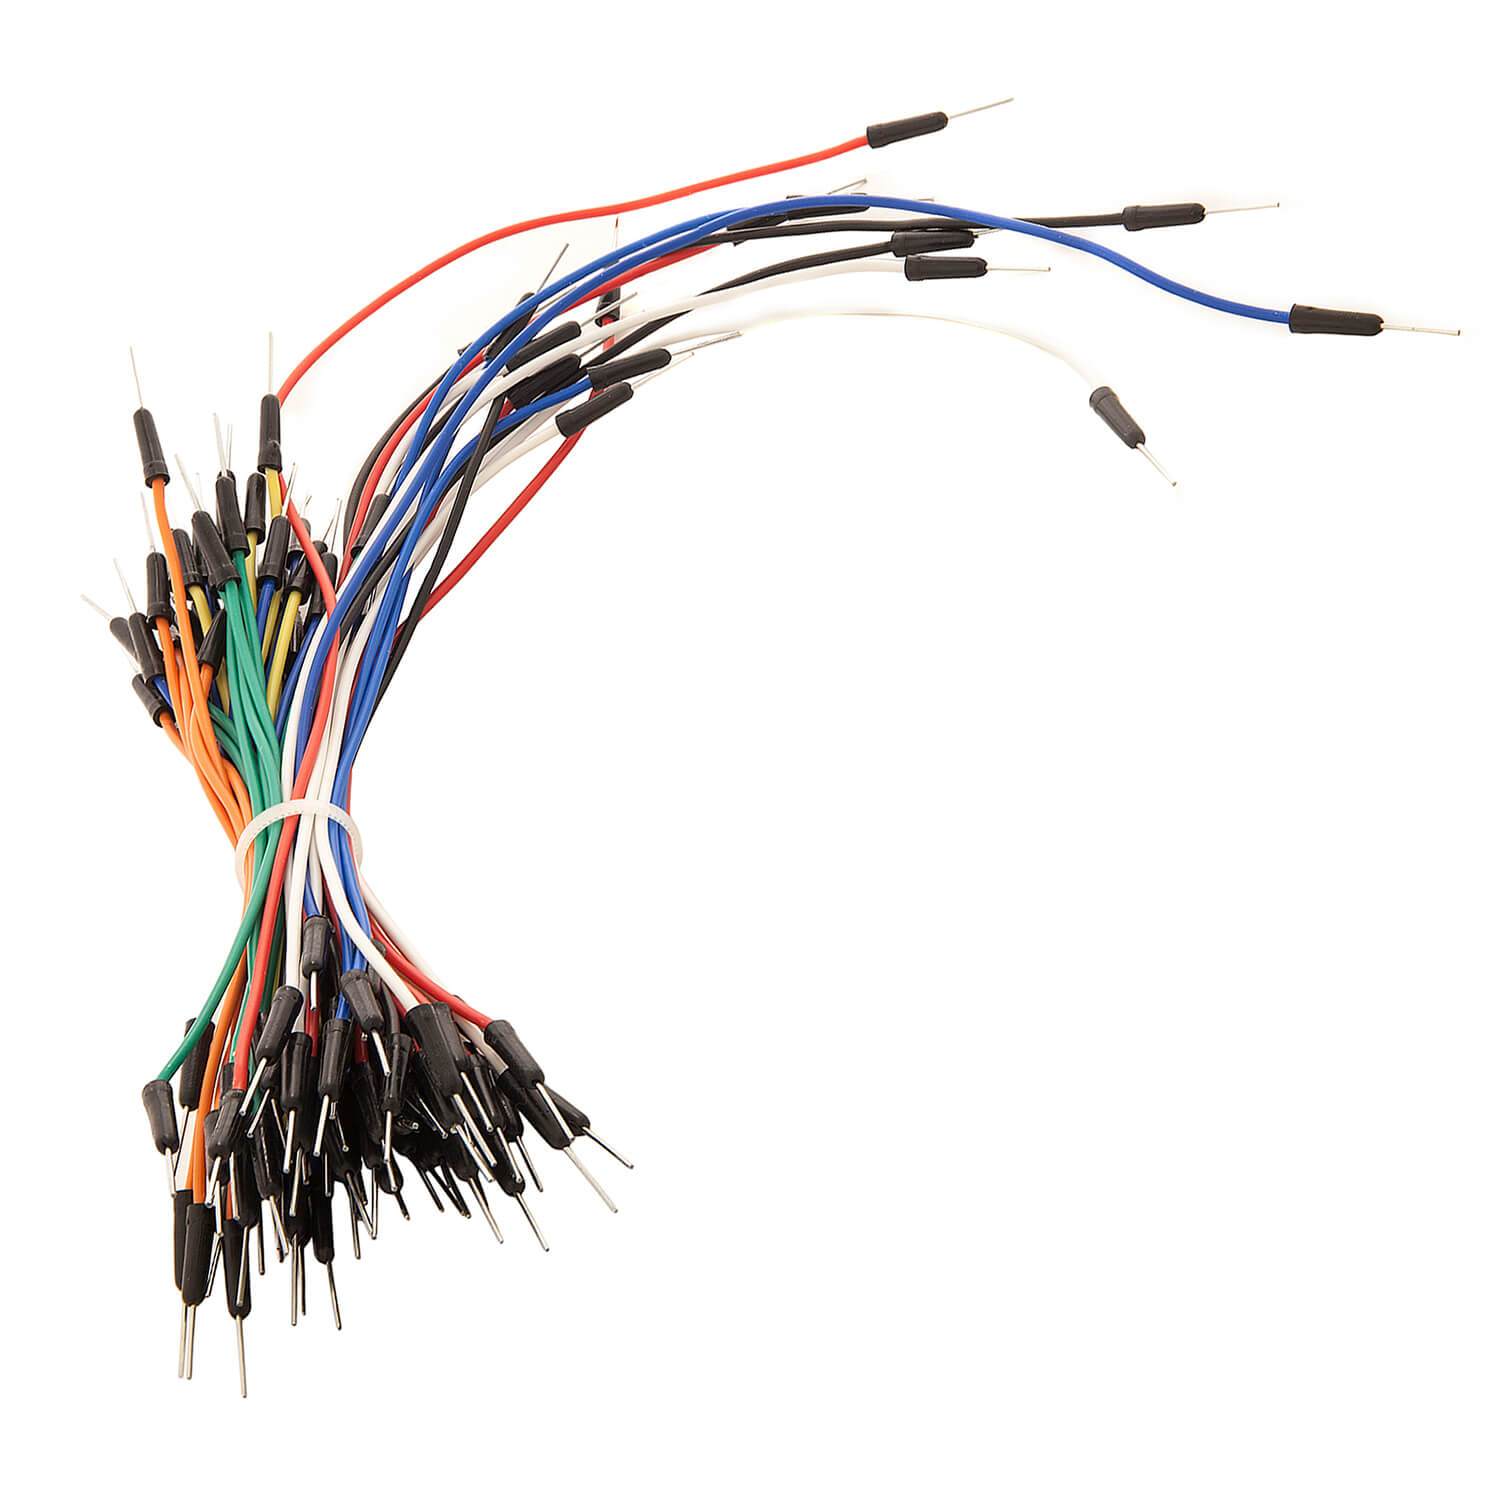 65Stk. Jumper Wire Kabel Steckbrücken für Arduino Breadboard, Steckbrett Arduino Zubehör AZ-Delivery 1x Jumper Wire 